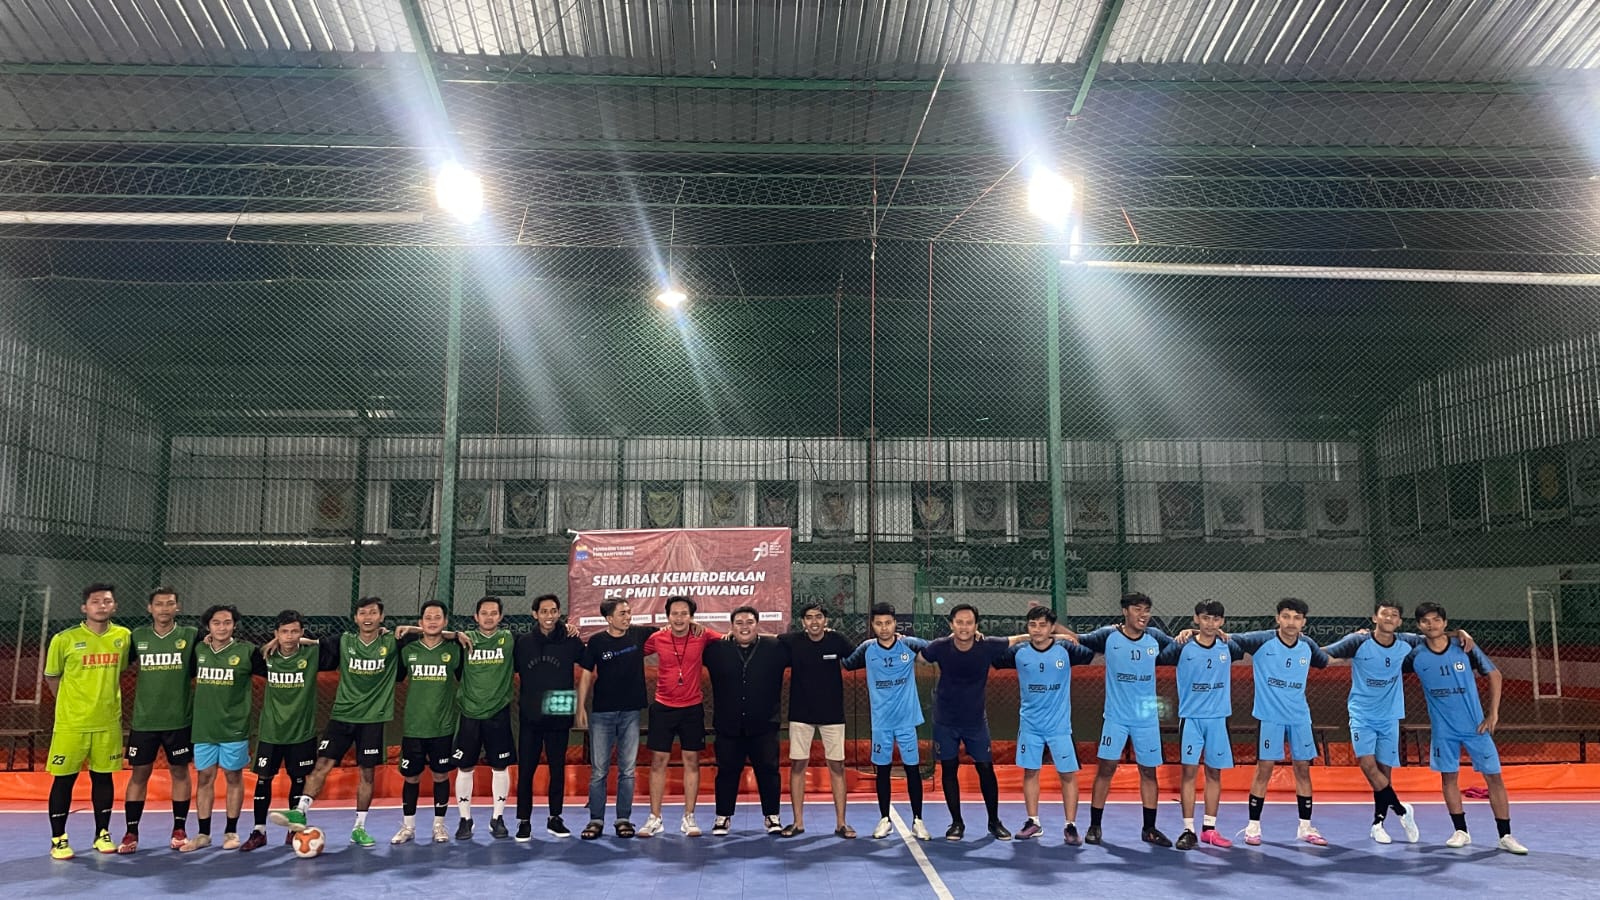 Menang 4 – 2, Tim Futsal PK – PMII IAIDA Raih Juara dalam Lomba Futsal